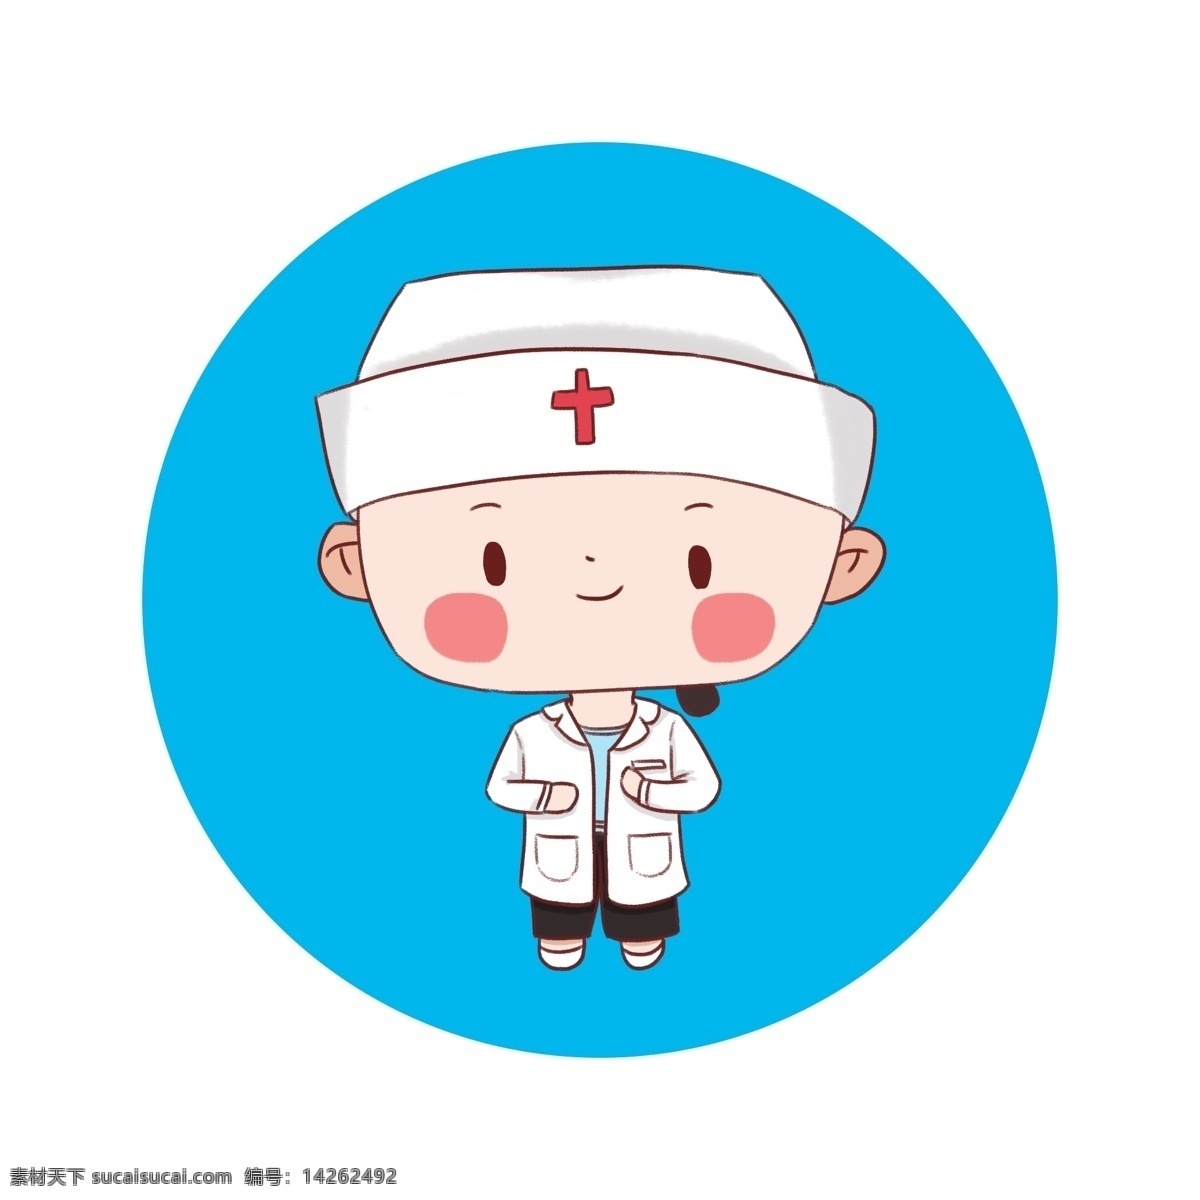 原创 可爱 护士 手绘 元素 护士日 白衣天使 国际护士日 护士元素 护士手绘元素 卡通护士元素